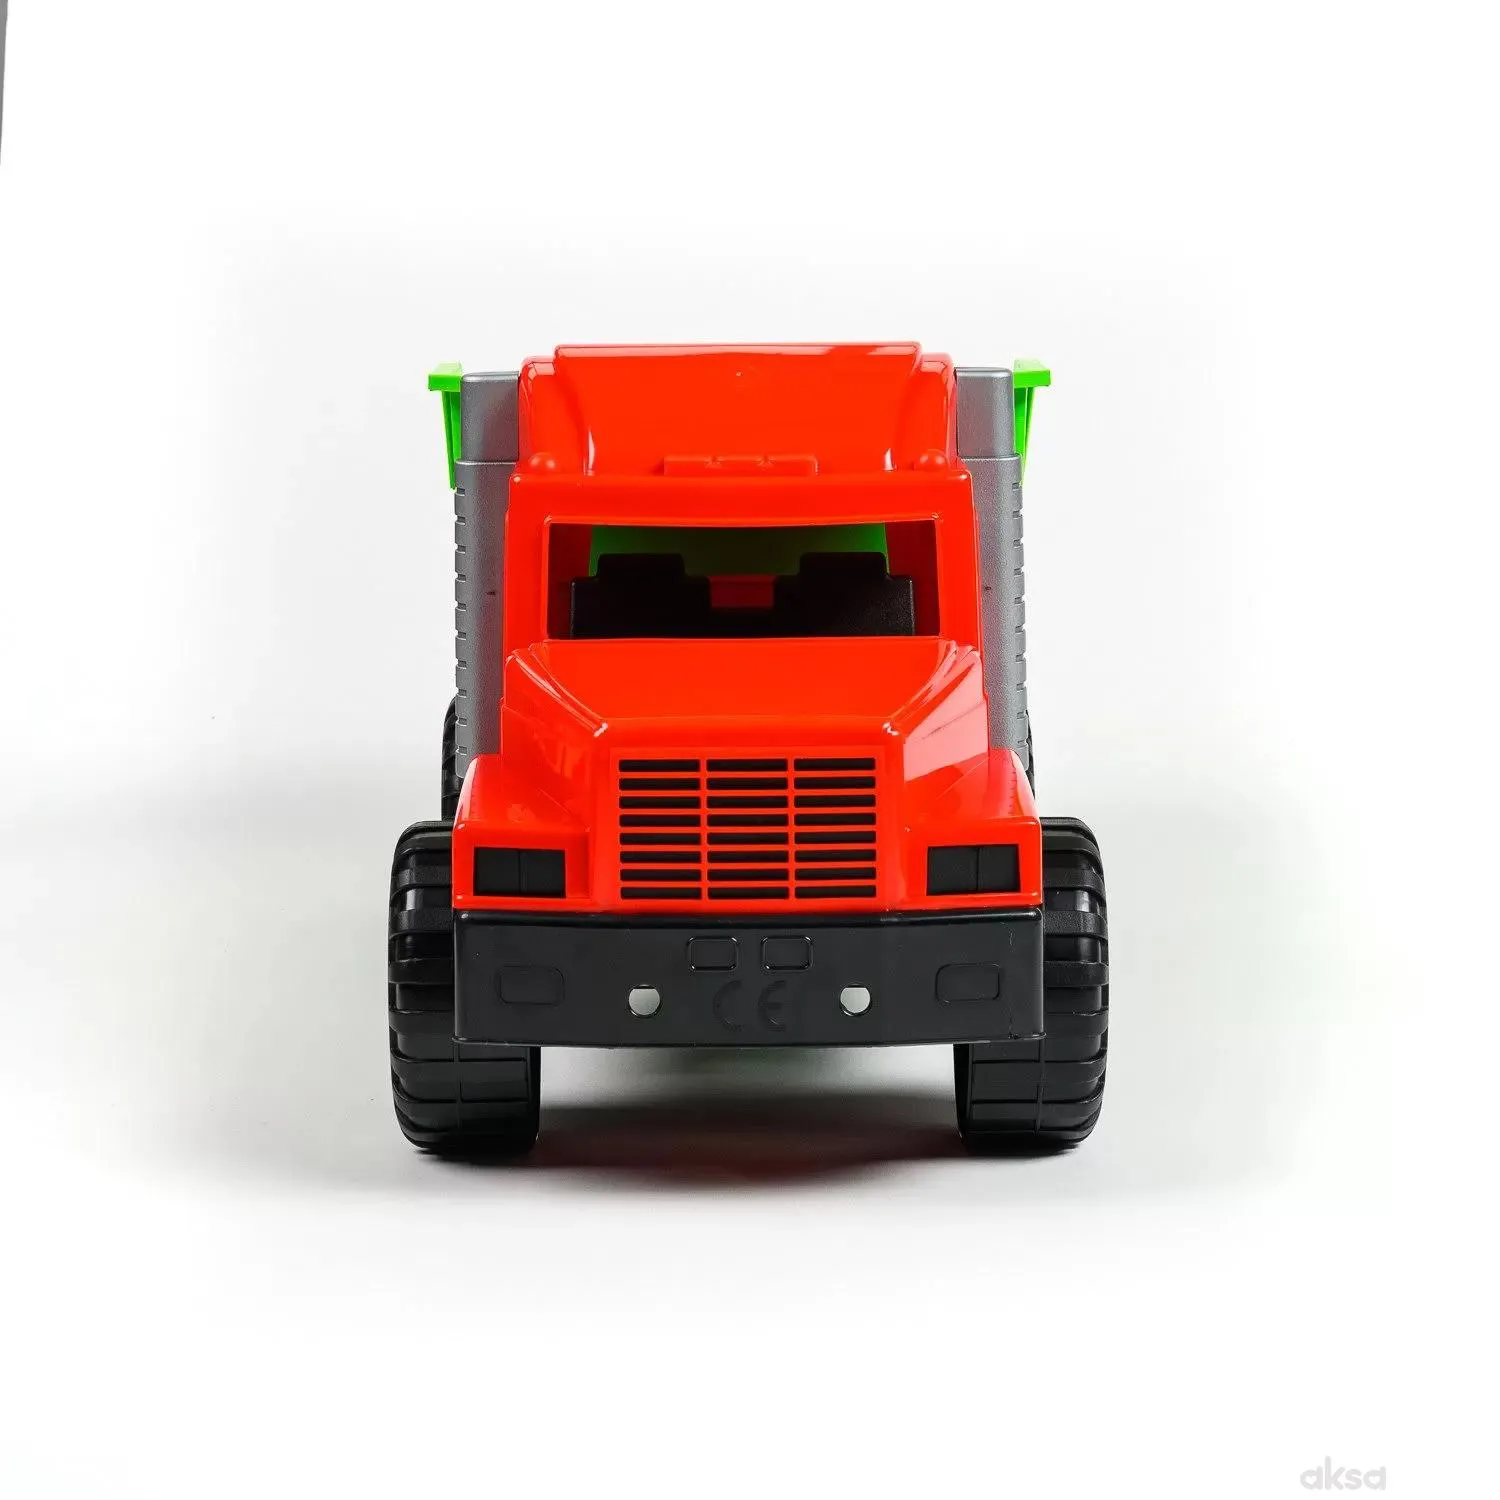 Dohany toys igračka kamion kiper 